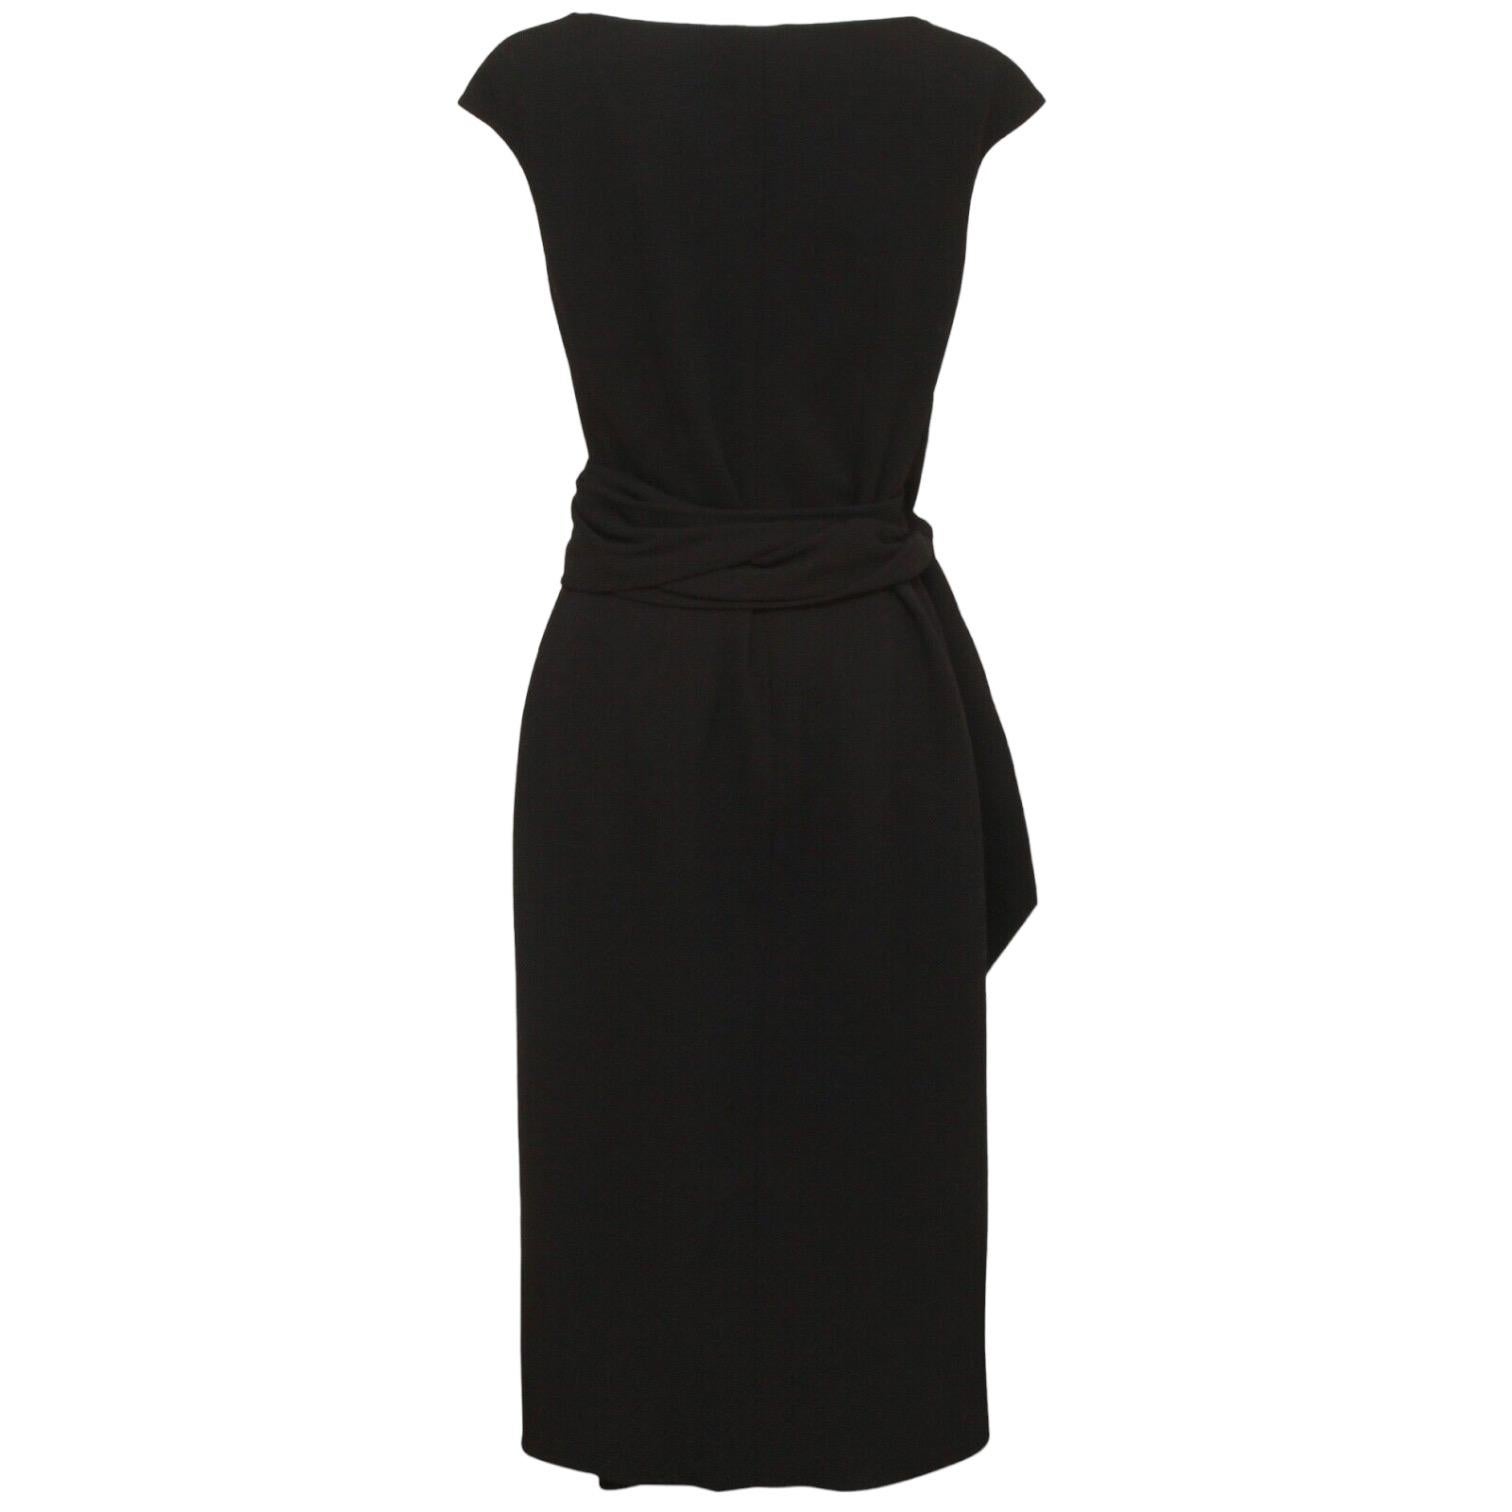 OSCAR DE LA RENTA Dress Black Sleeveless Wrap Knit Sz 8 NWT $2190 3